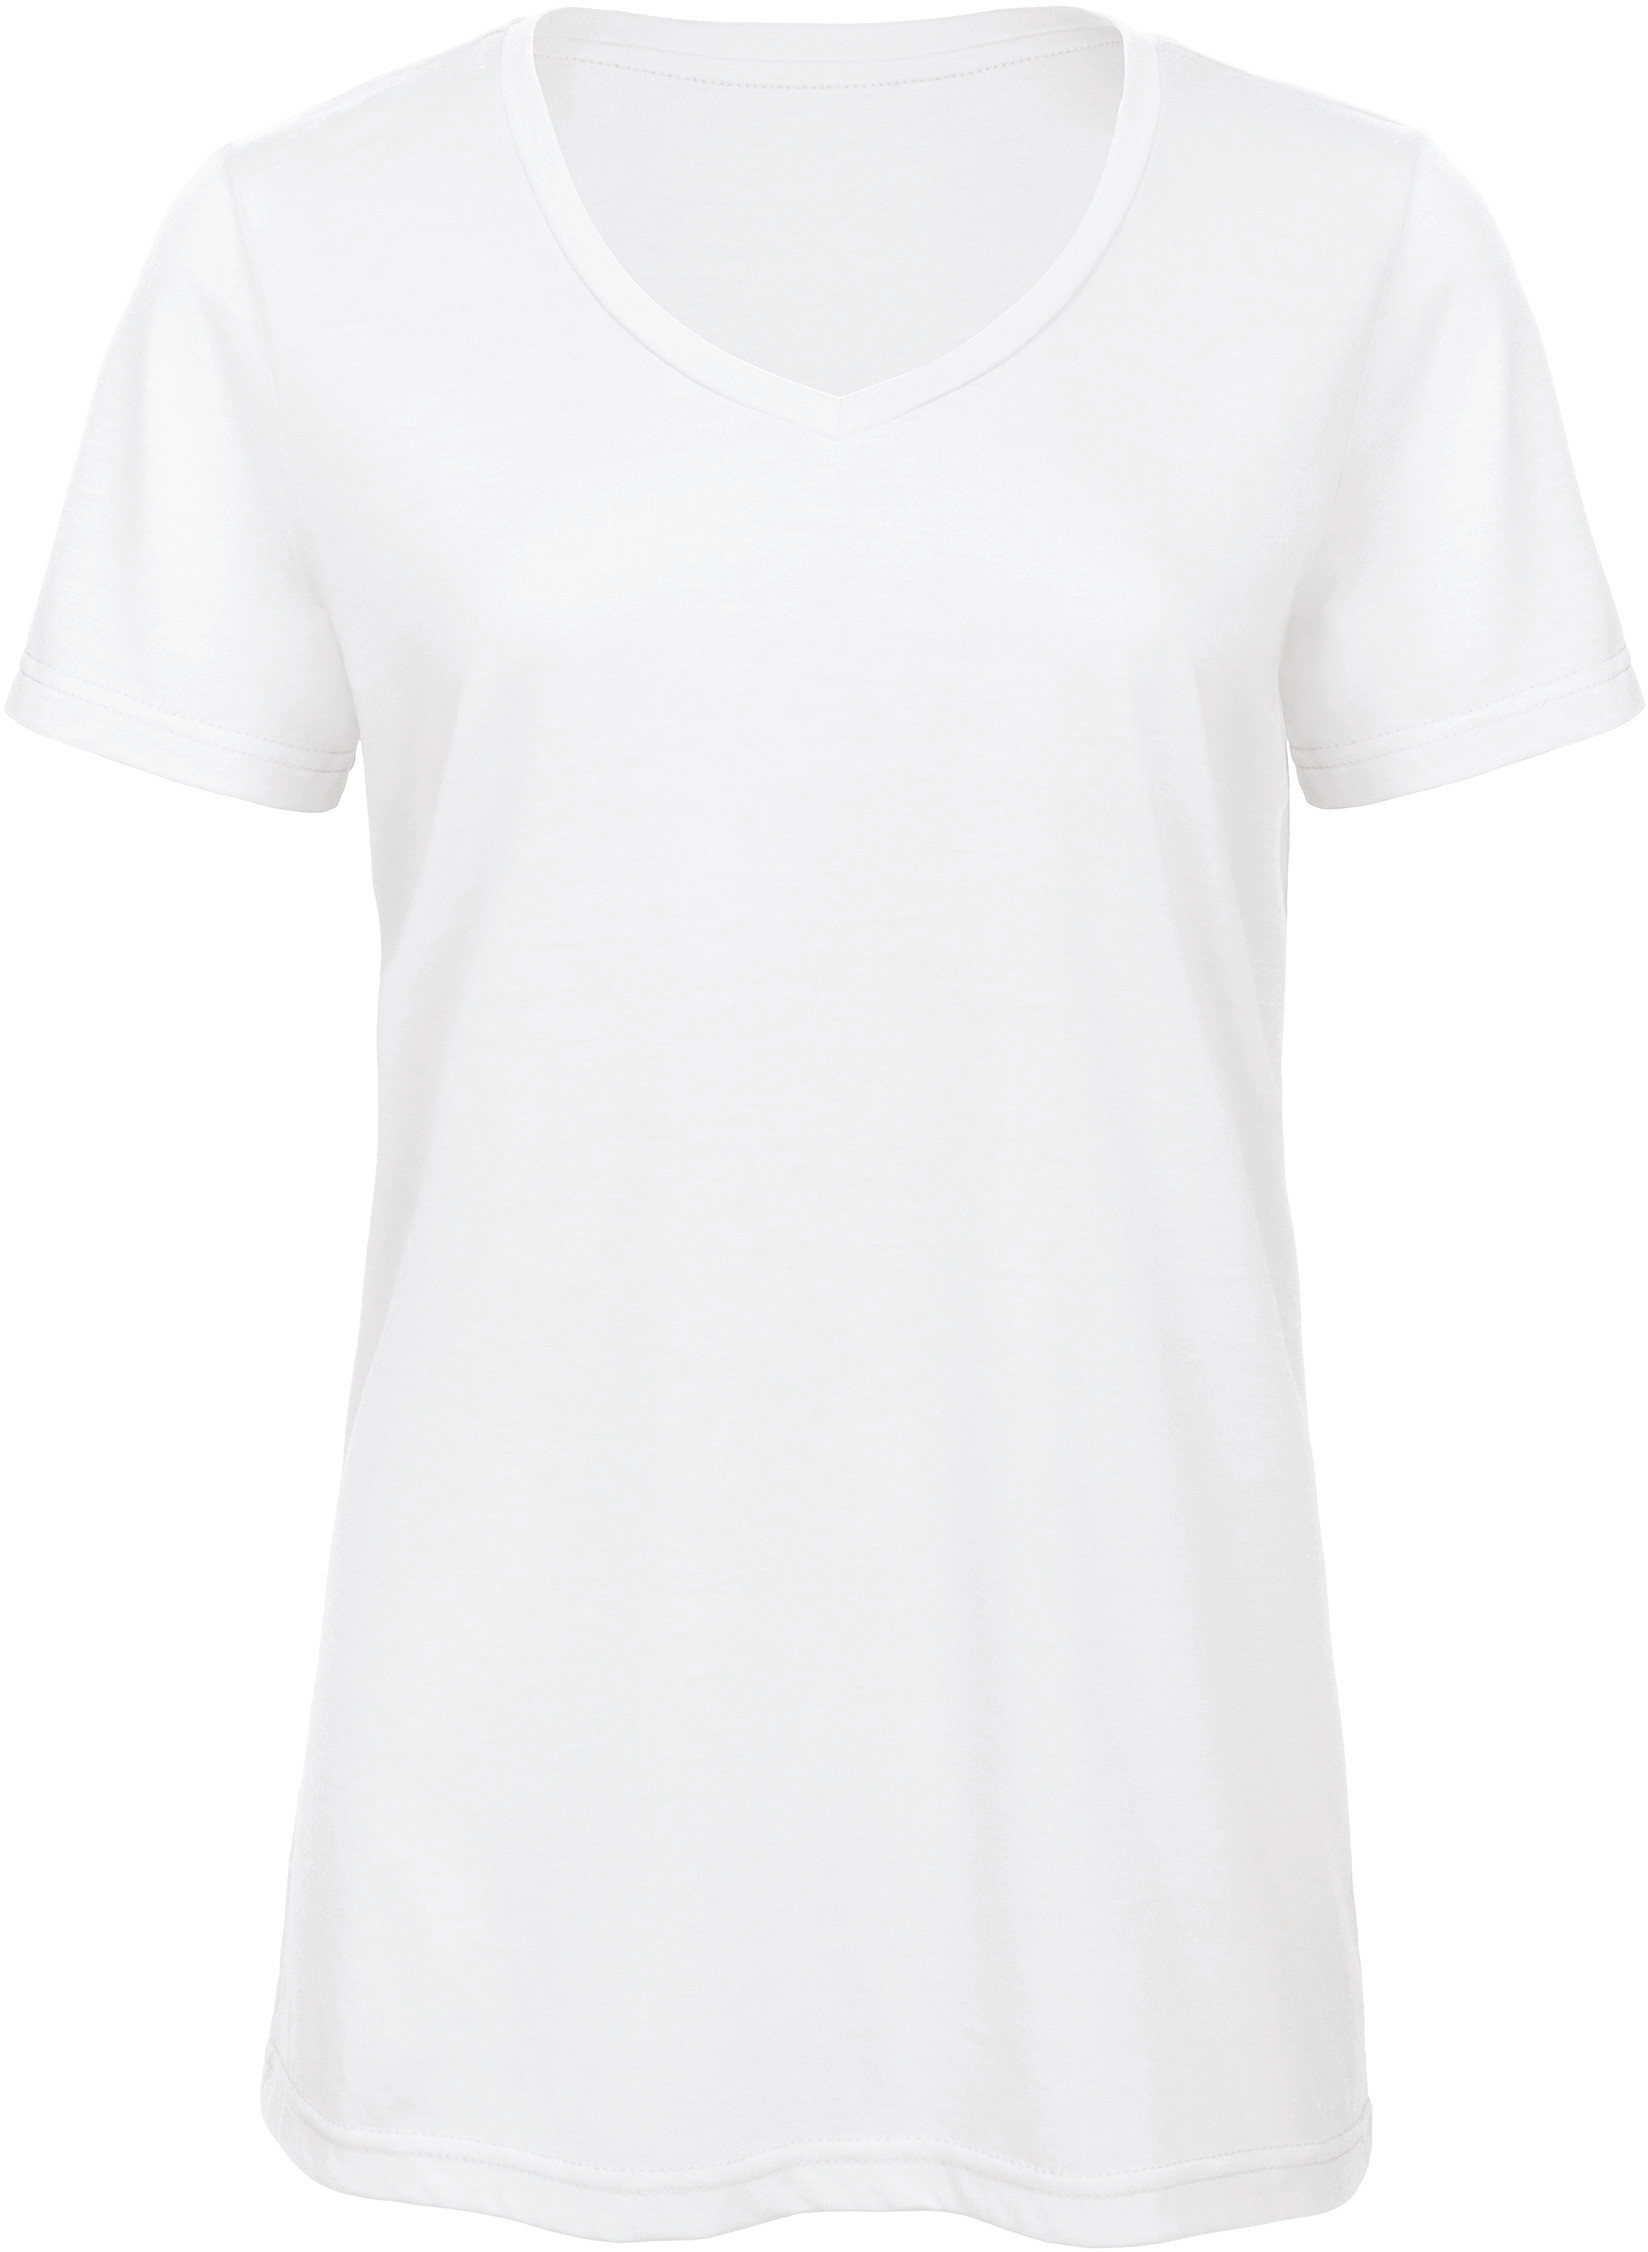 T-Shirt Femme Col-V Profond Triblend - Tee shirt Personnalisé